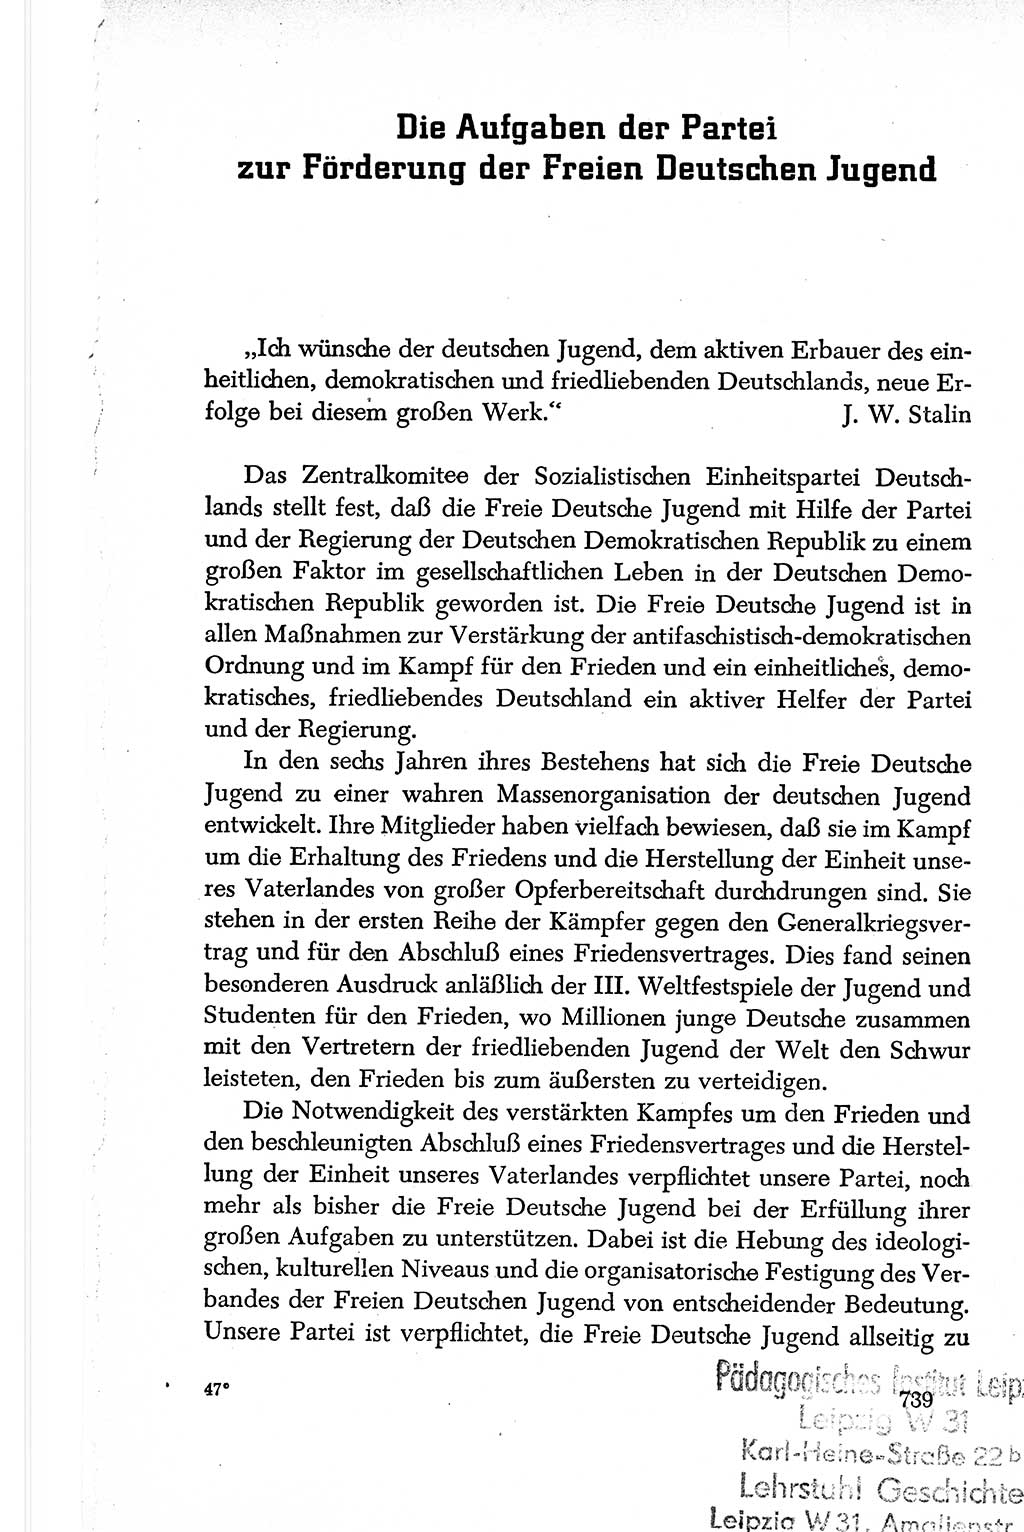 Dokumente der Sozialistischen Einheitspartei Deutschlands (SED) [Deutsche Demokratische Republik (DDR)] 1950-1952, Seite 739 (Dok. SED DDR 1950-1952, S. 739)